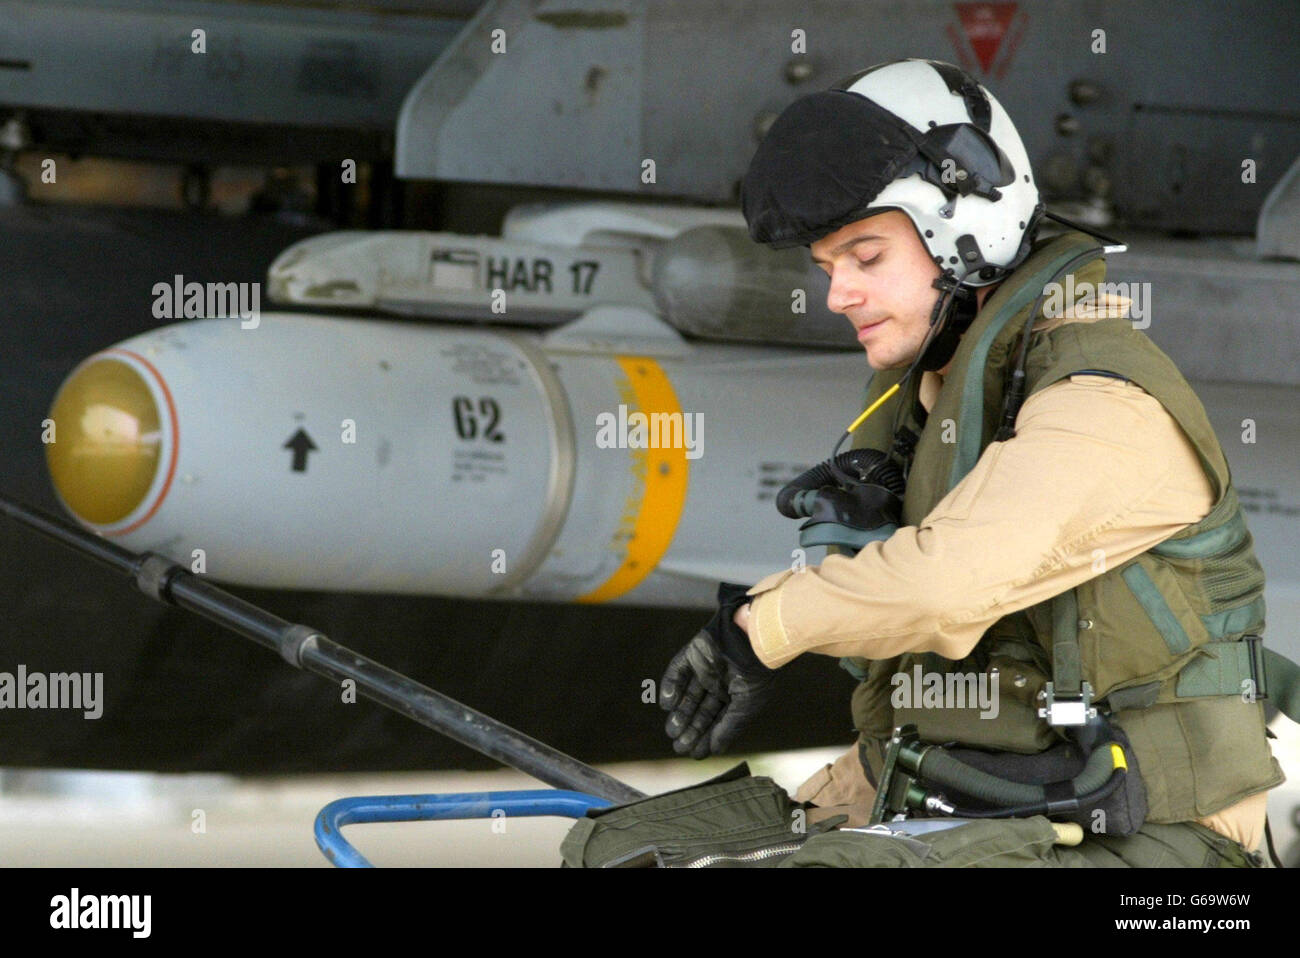 Der britische Pilot Flt LT Paul Francis überprüft seine Uhr, während er neben dem Flügel seines Harrier GR7 sitzt, bewaffnet mit einer Maverick-Rakete, an einer Basis in Kuwait. Das US-Zentralkommando sagte am Samstag, dass es keine "Pause" bei militärischen Operationen geben würde, um den irakischen Präsidenten Saddam Hussein zu stürzen. Stockfoto